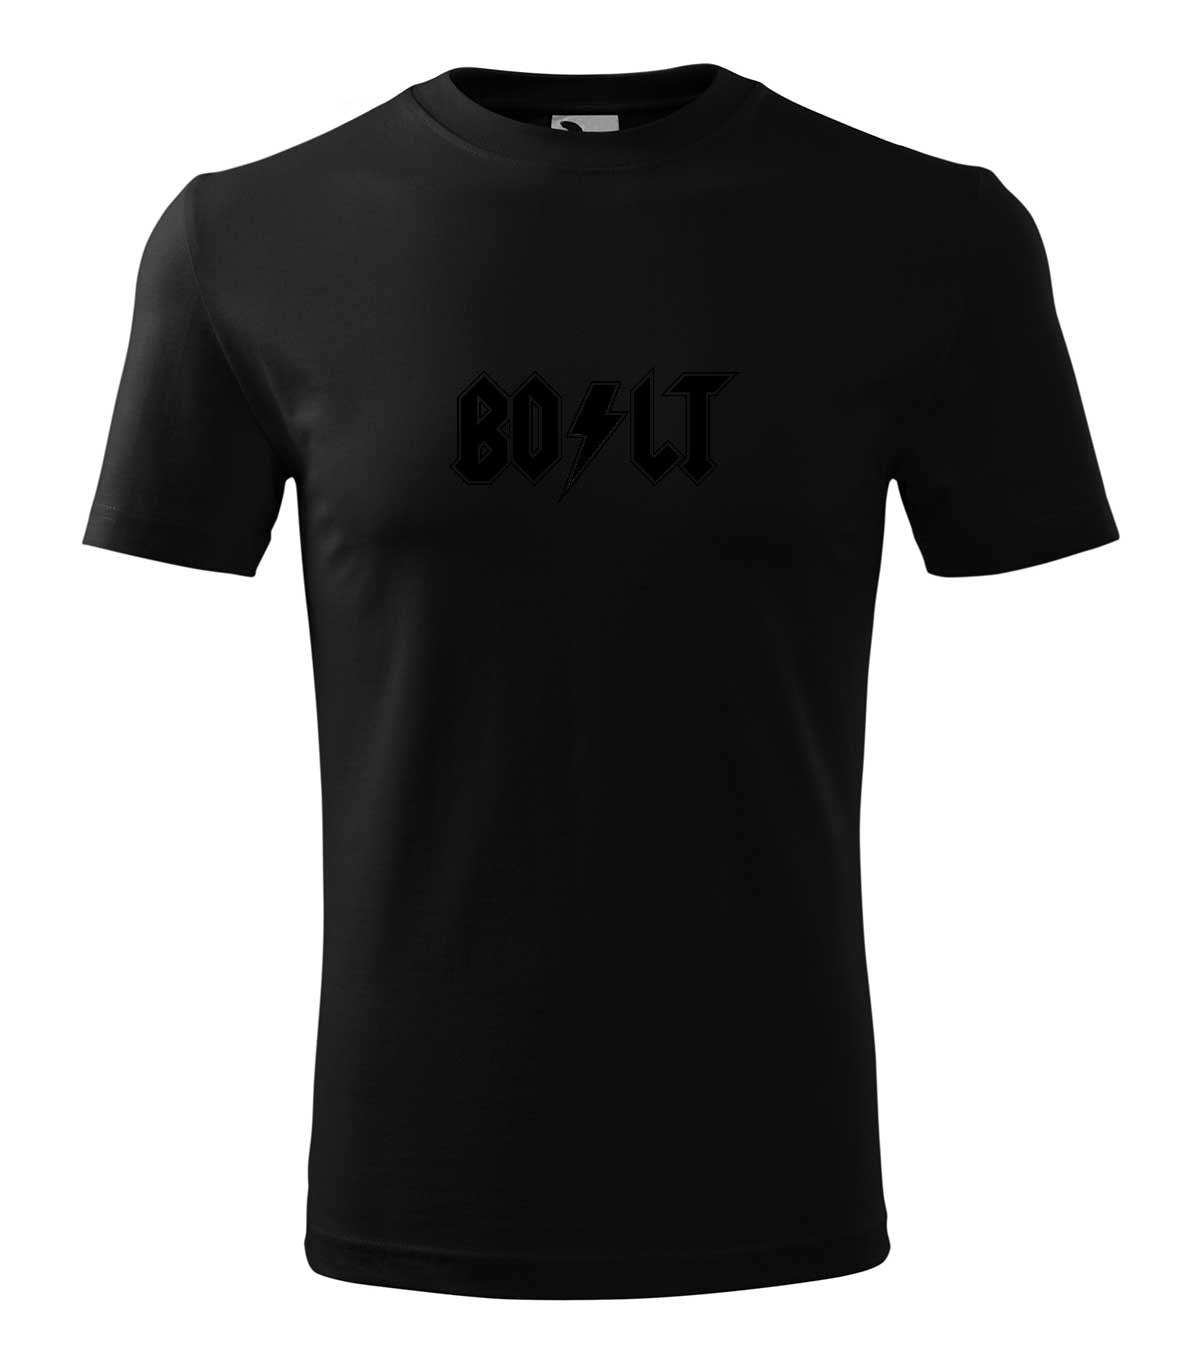 Bolt gyerek technikai póló